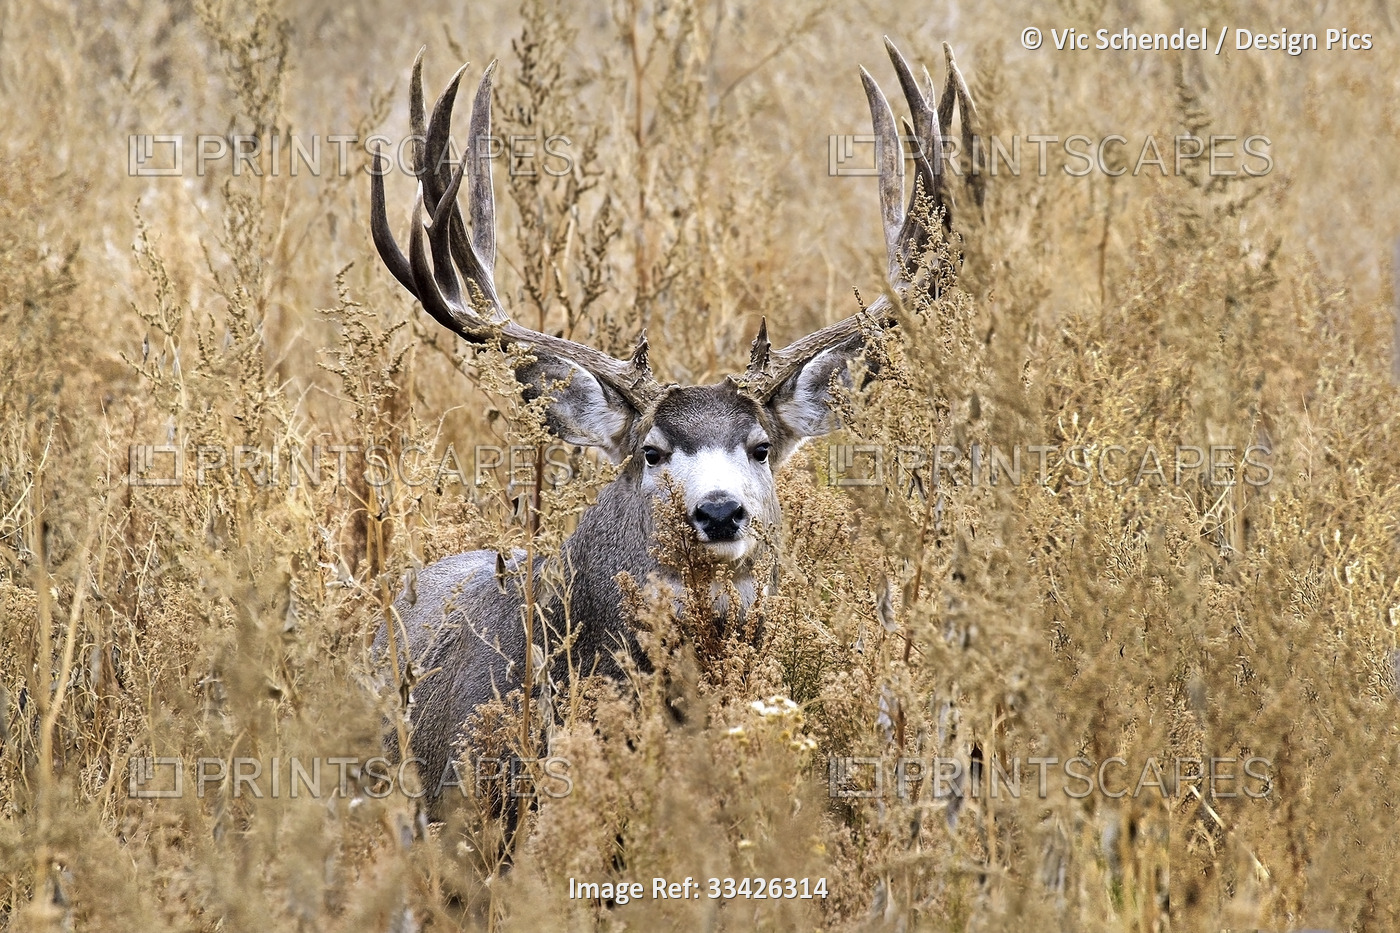 Mule deer buck (Odocoileus hemionus) with large antlers standing in a field of ...